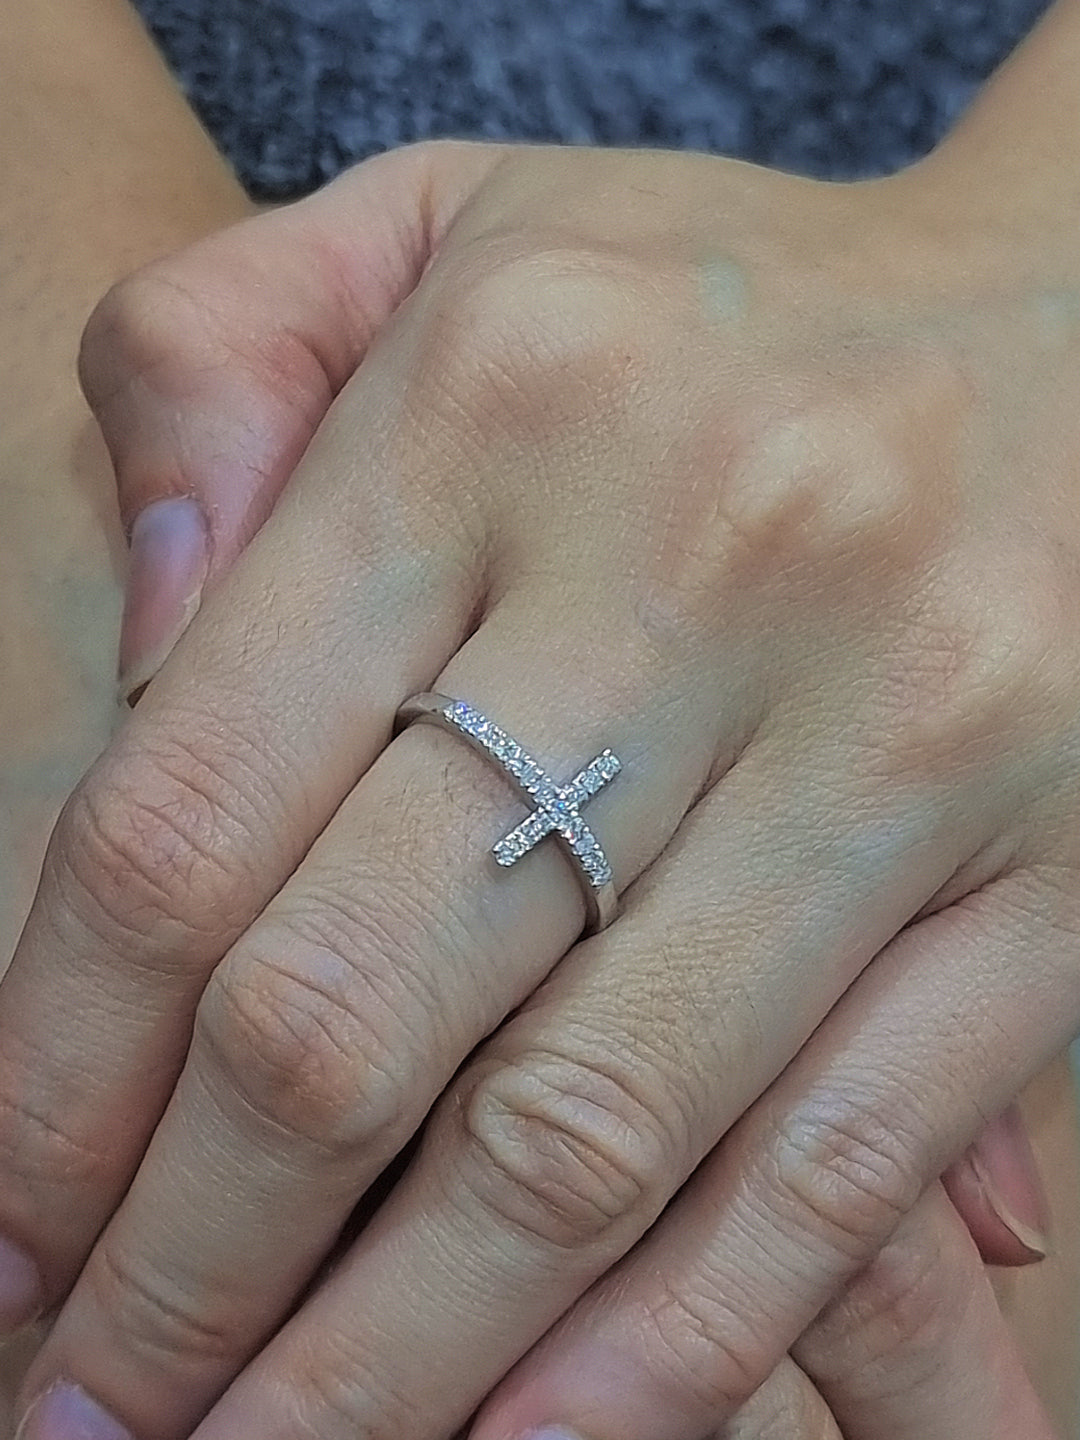 Diamond Cross Ring In 18k White Gold.